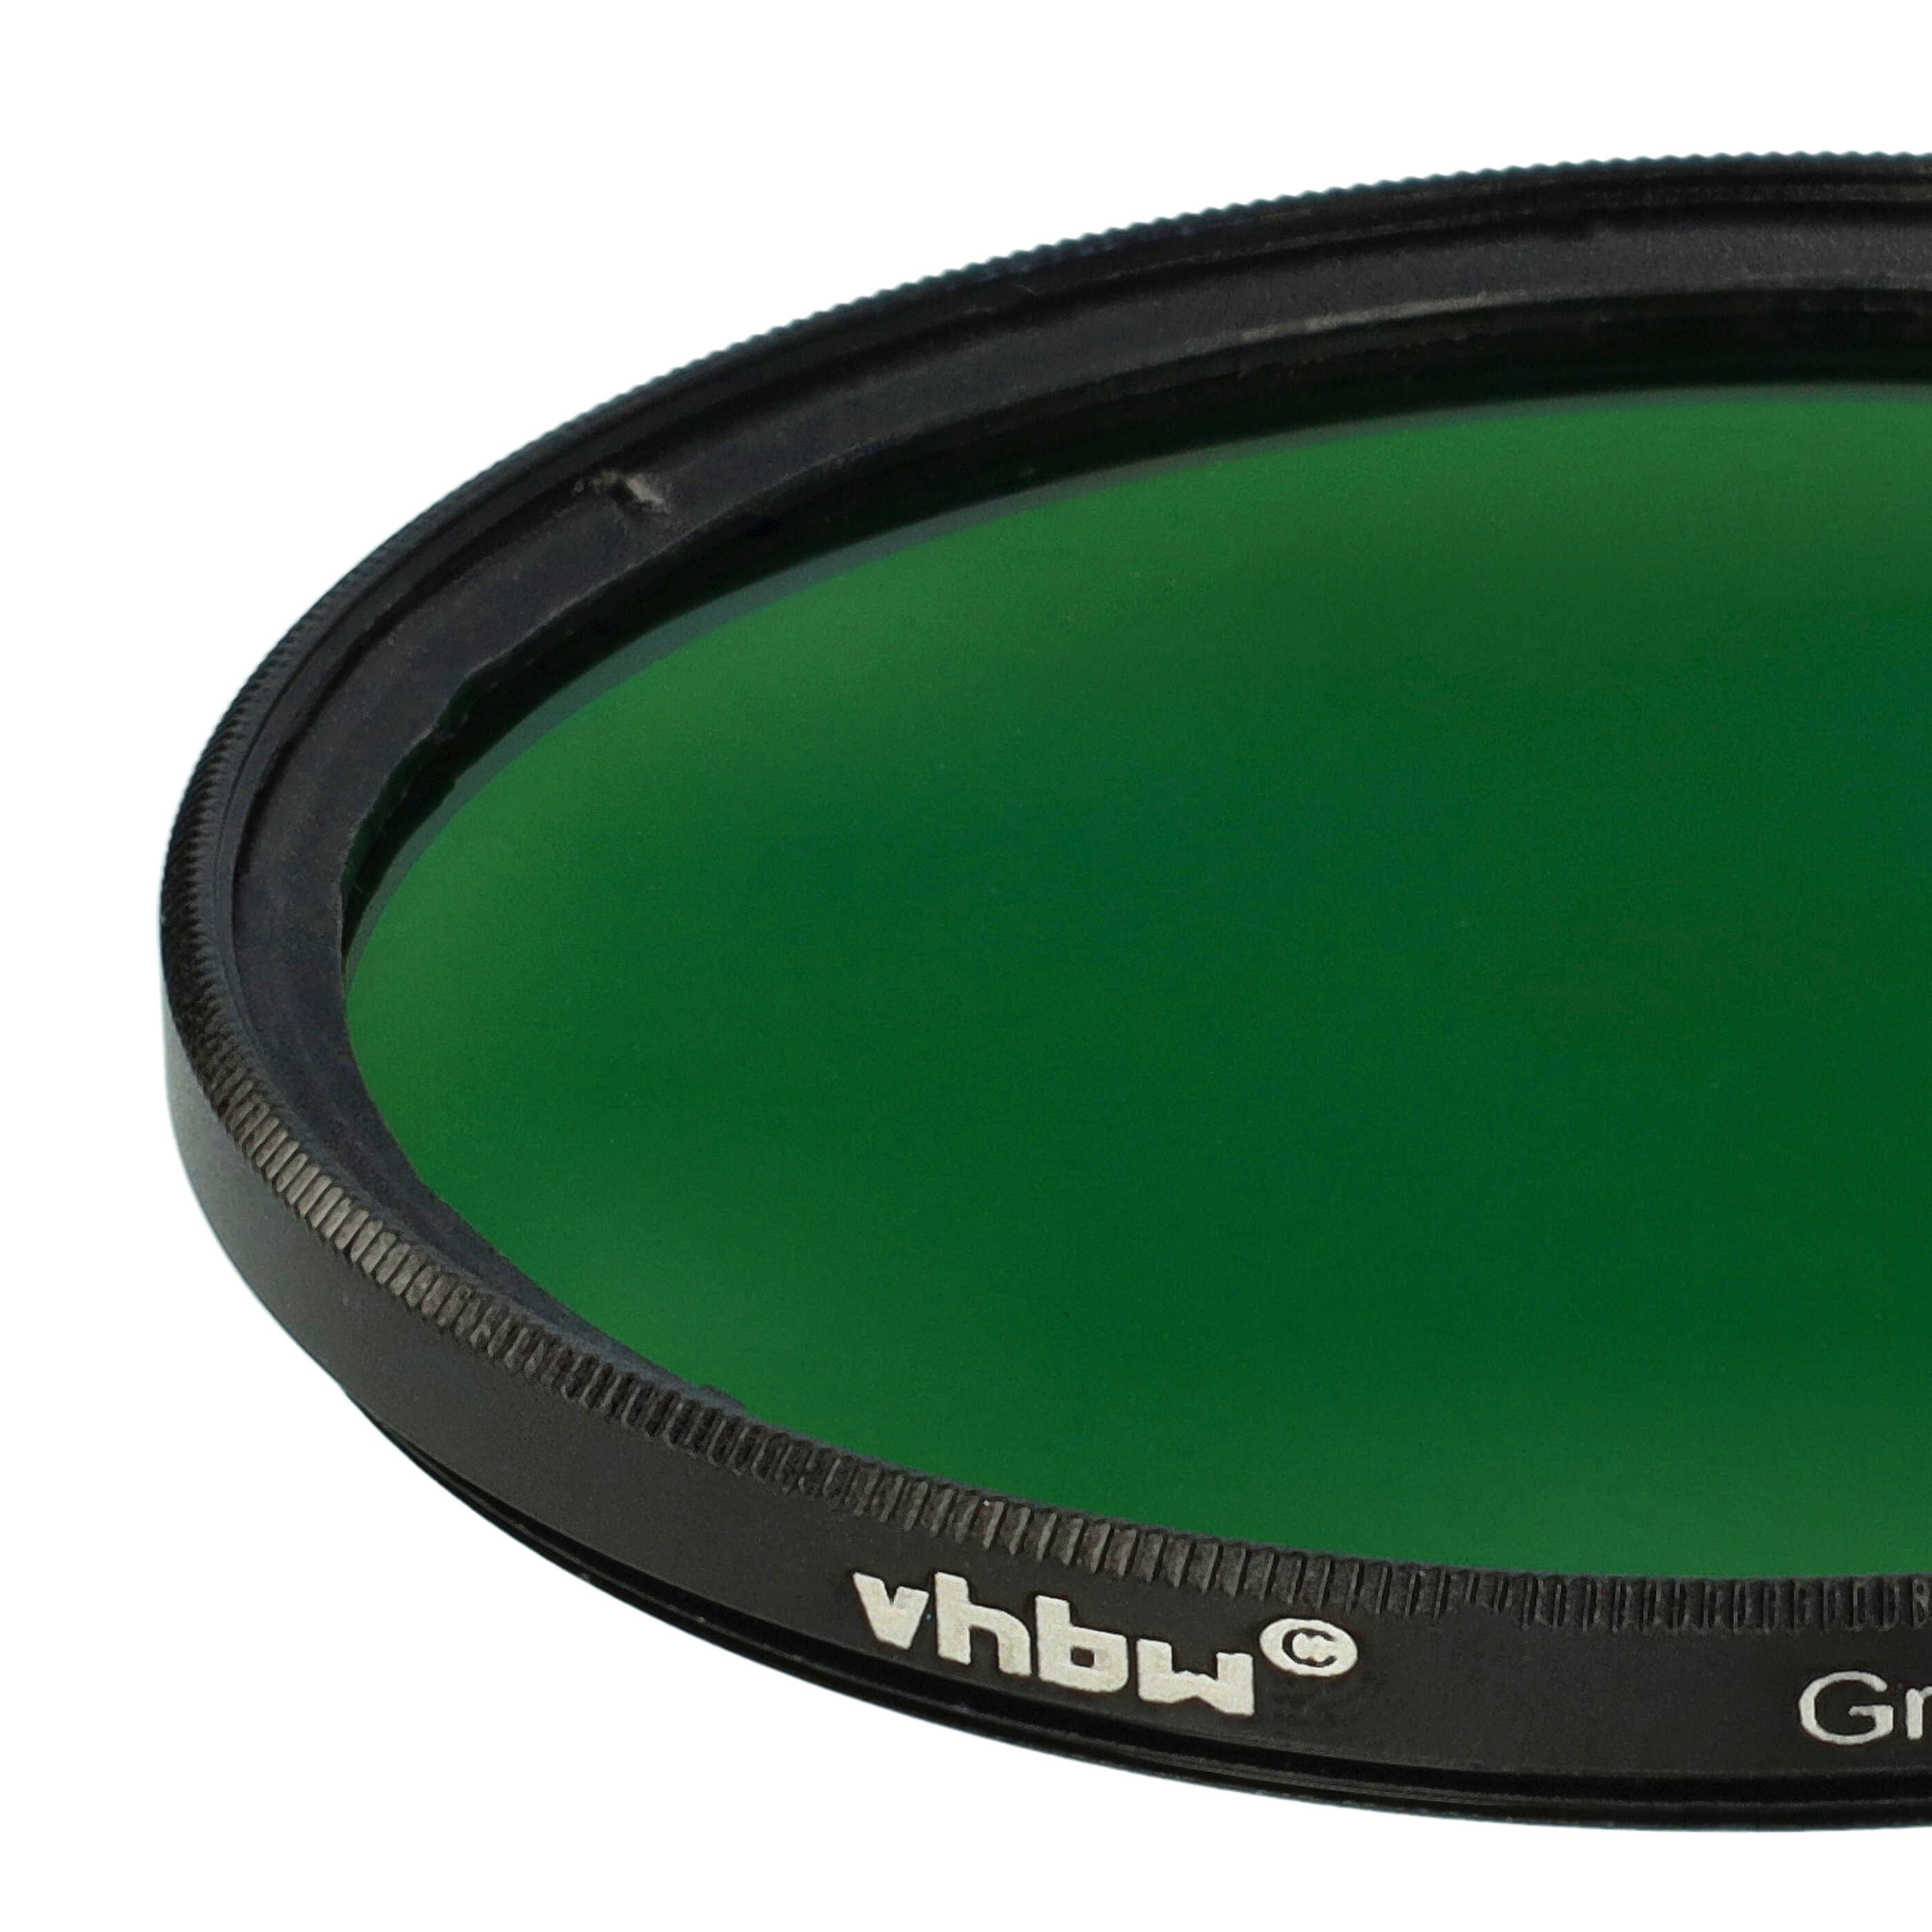 Filtro colorato per obiettivi fotocamera con filettatura da 67 mm - filtro verde